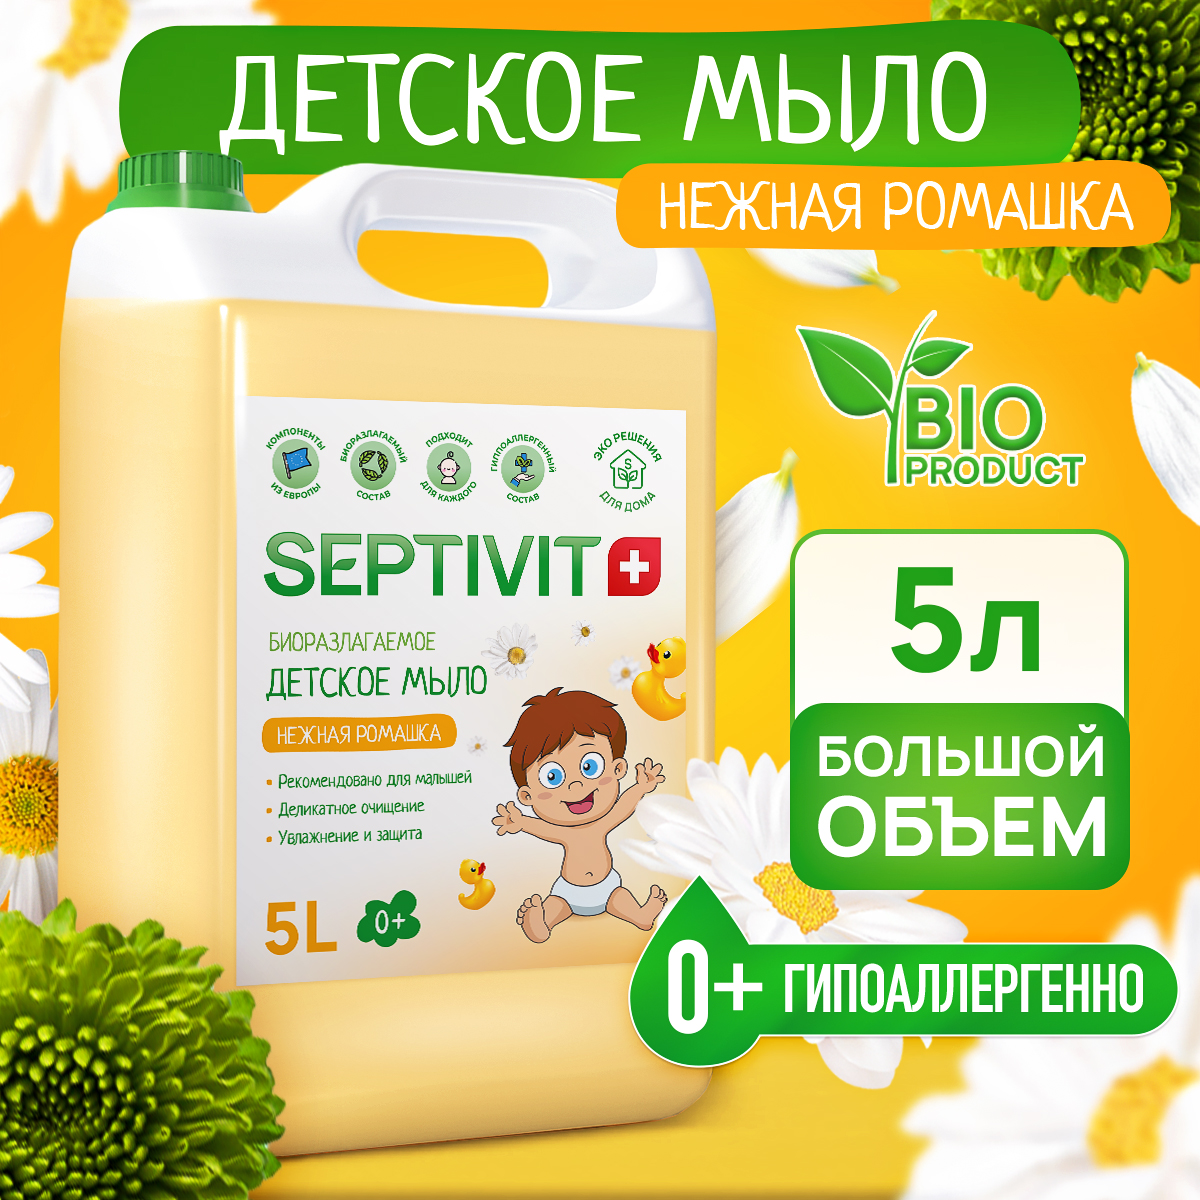 Мыло детское SEPTIVIT Premium Нежная ромашка 5л